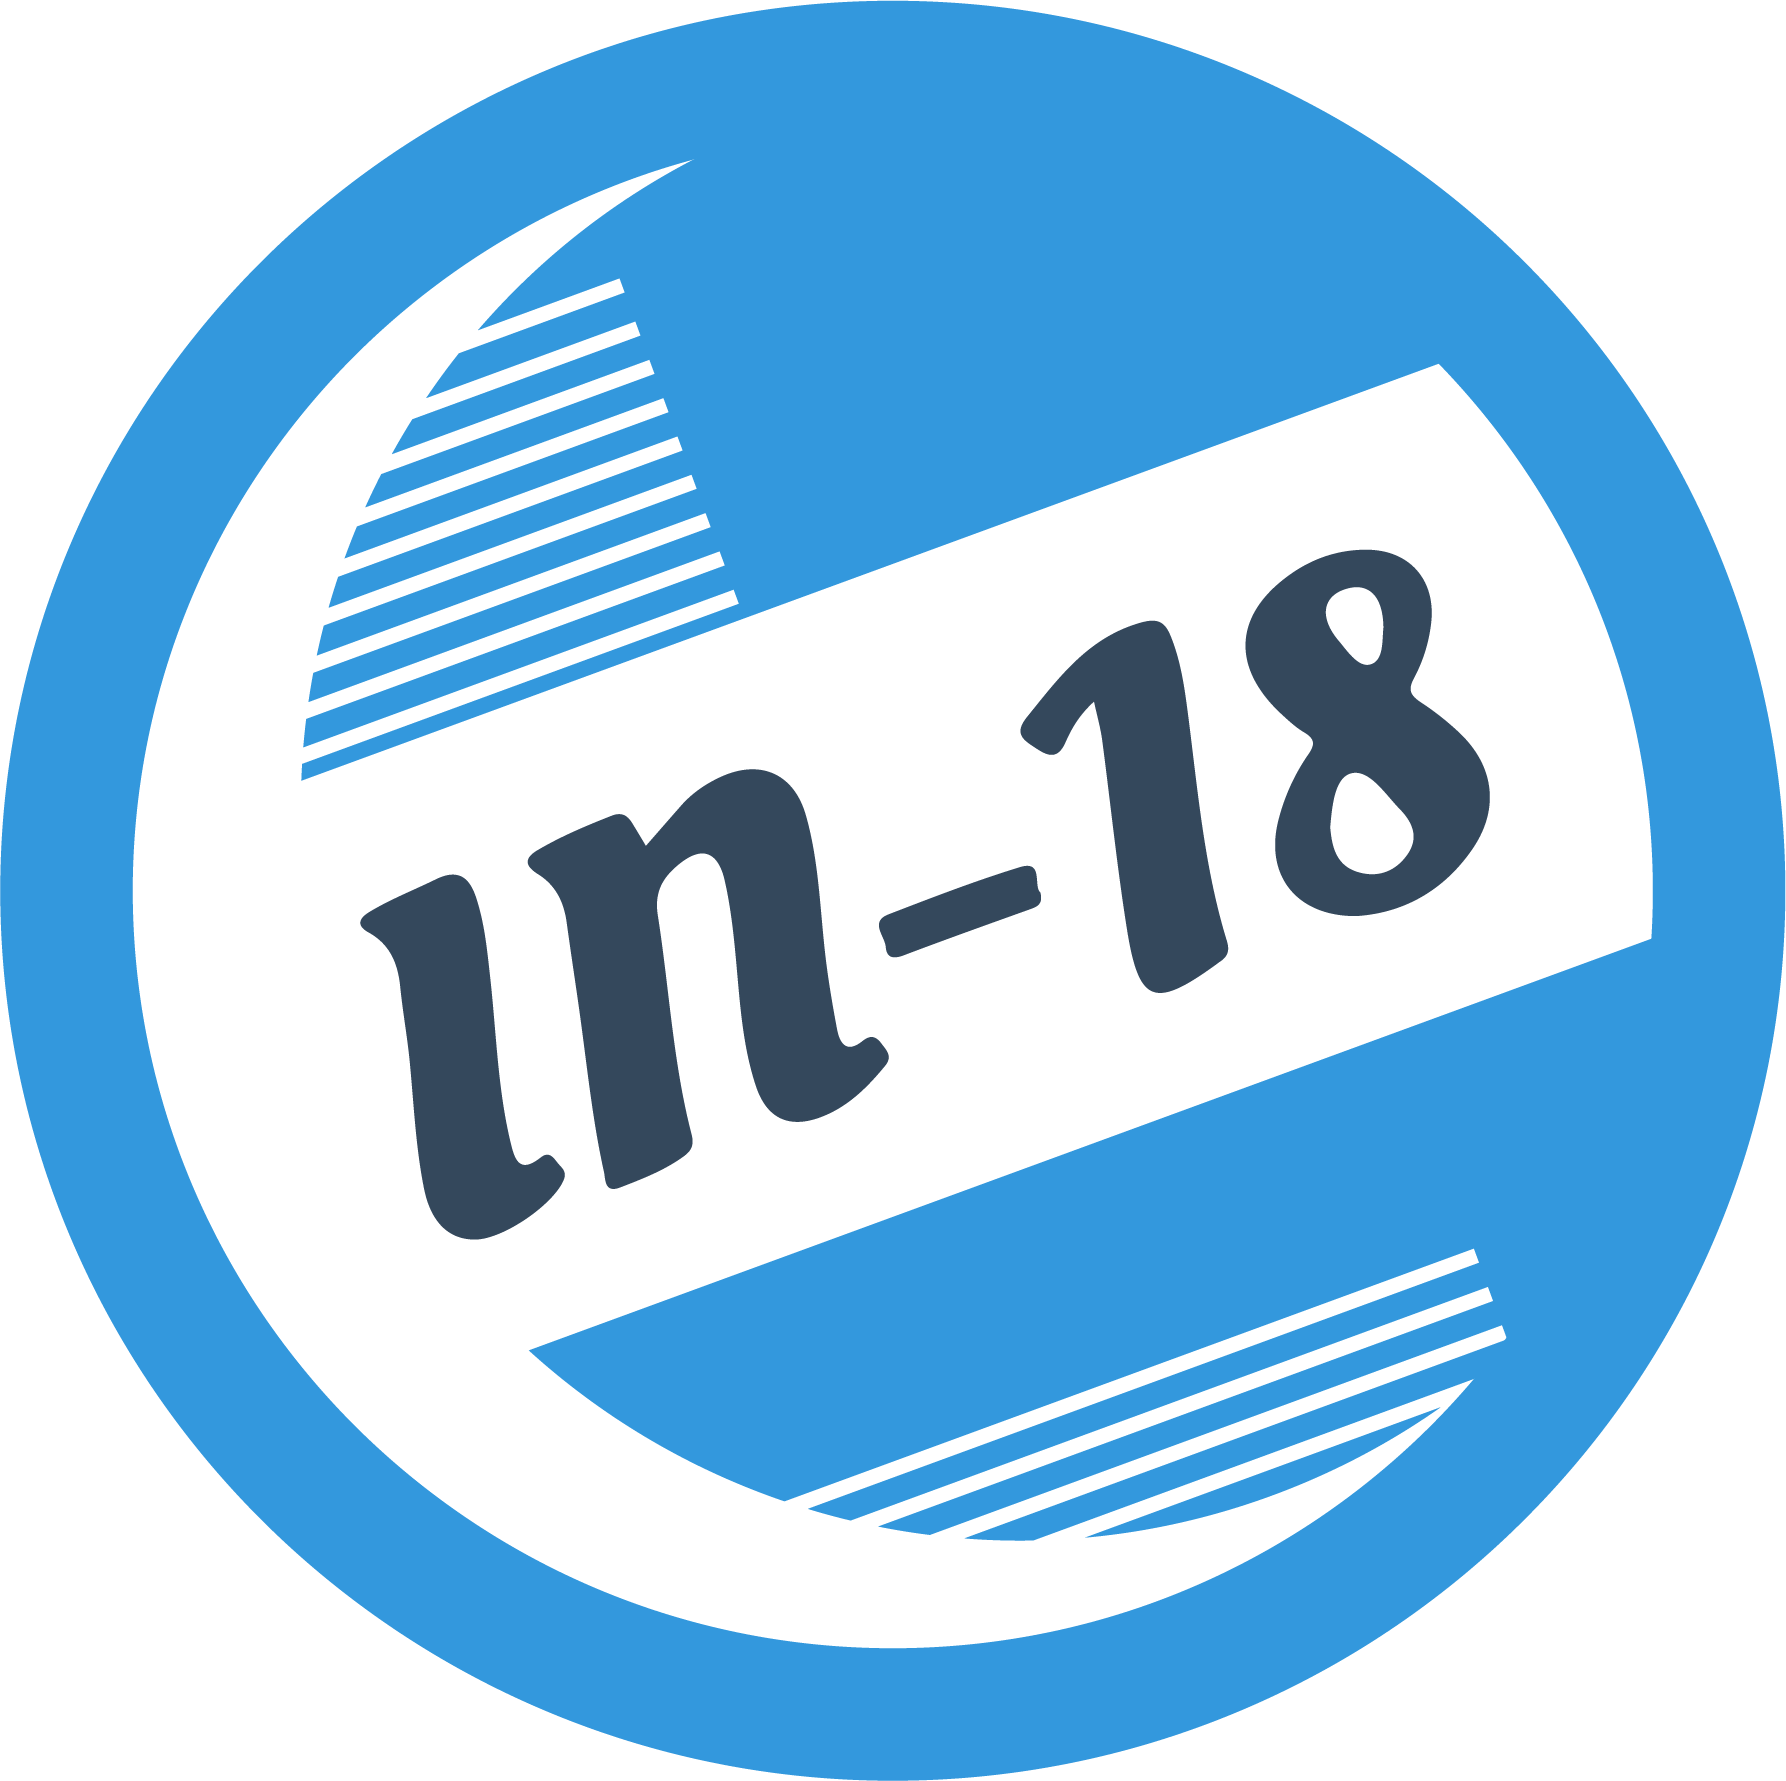 IN-18 LLC